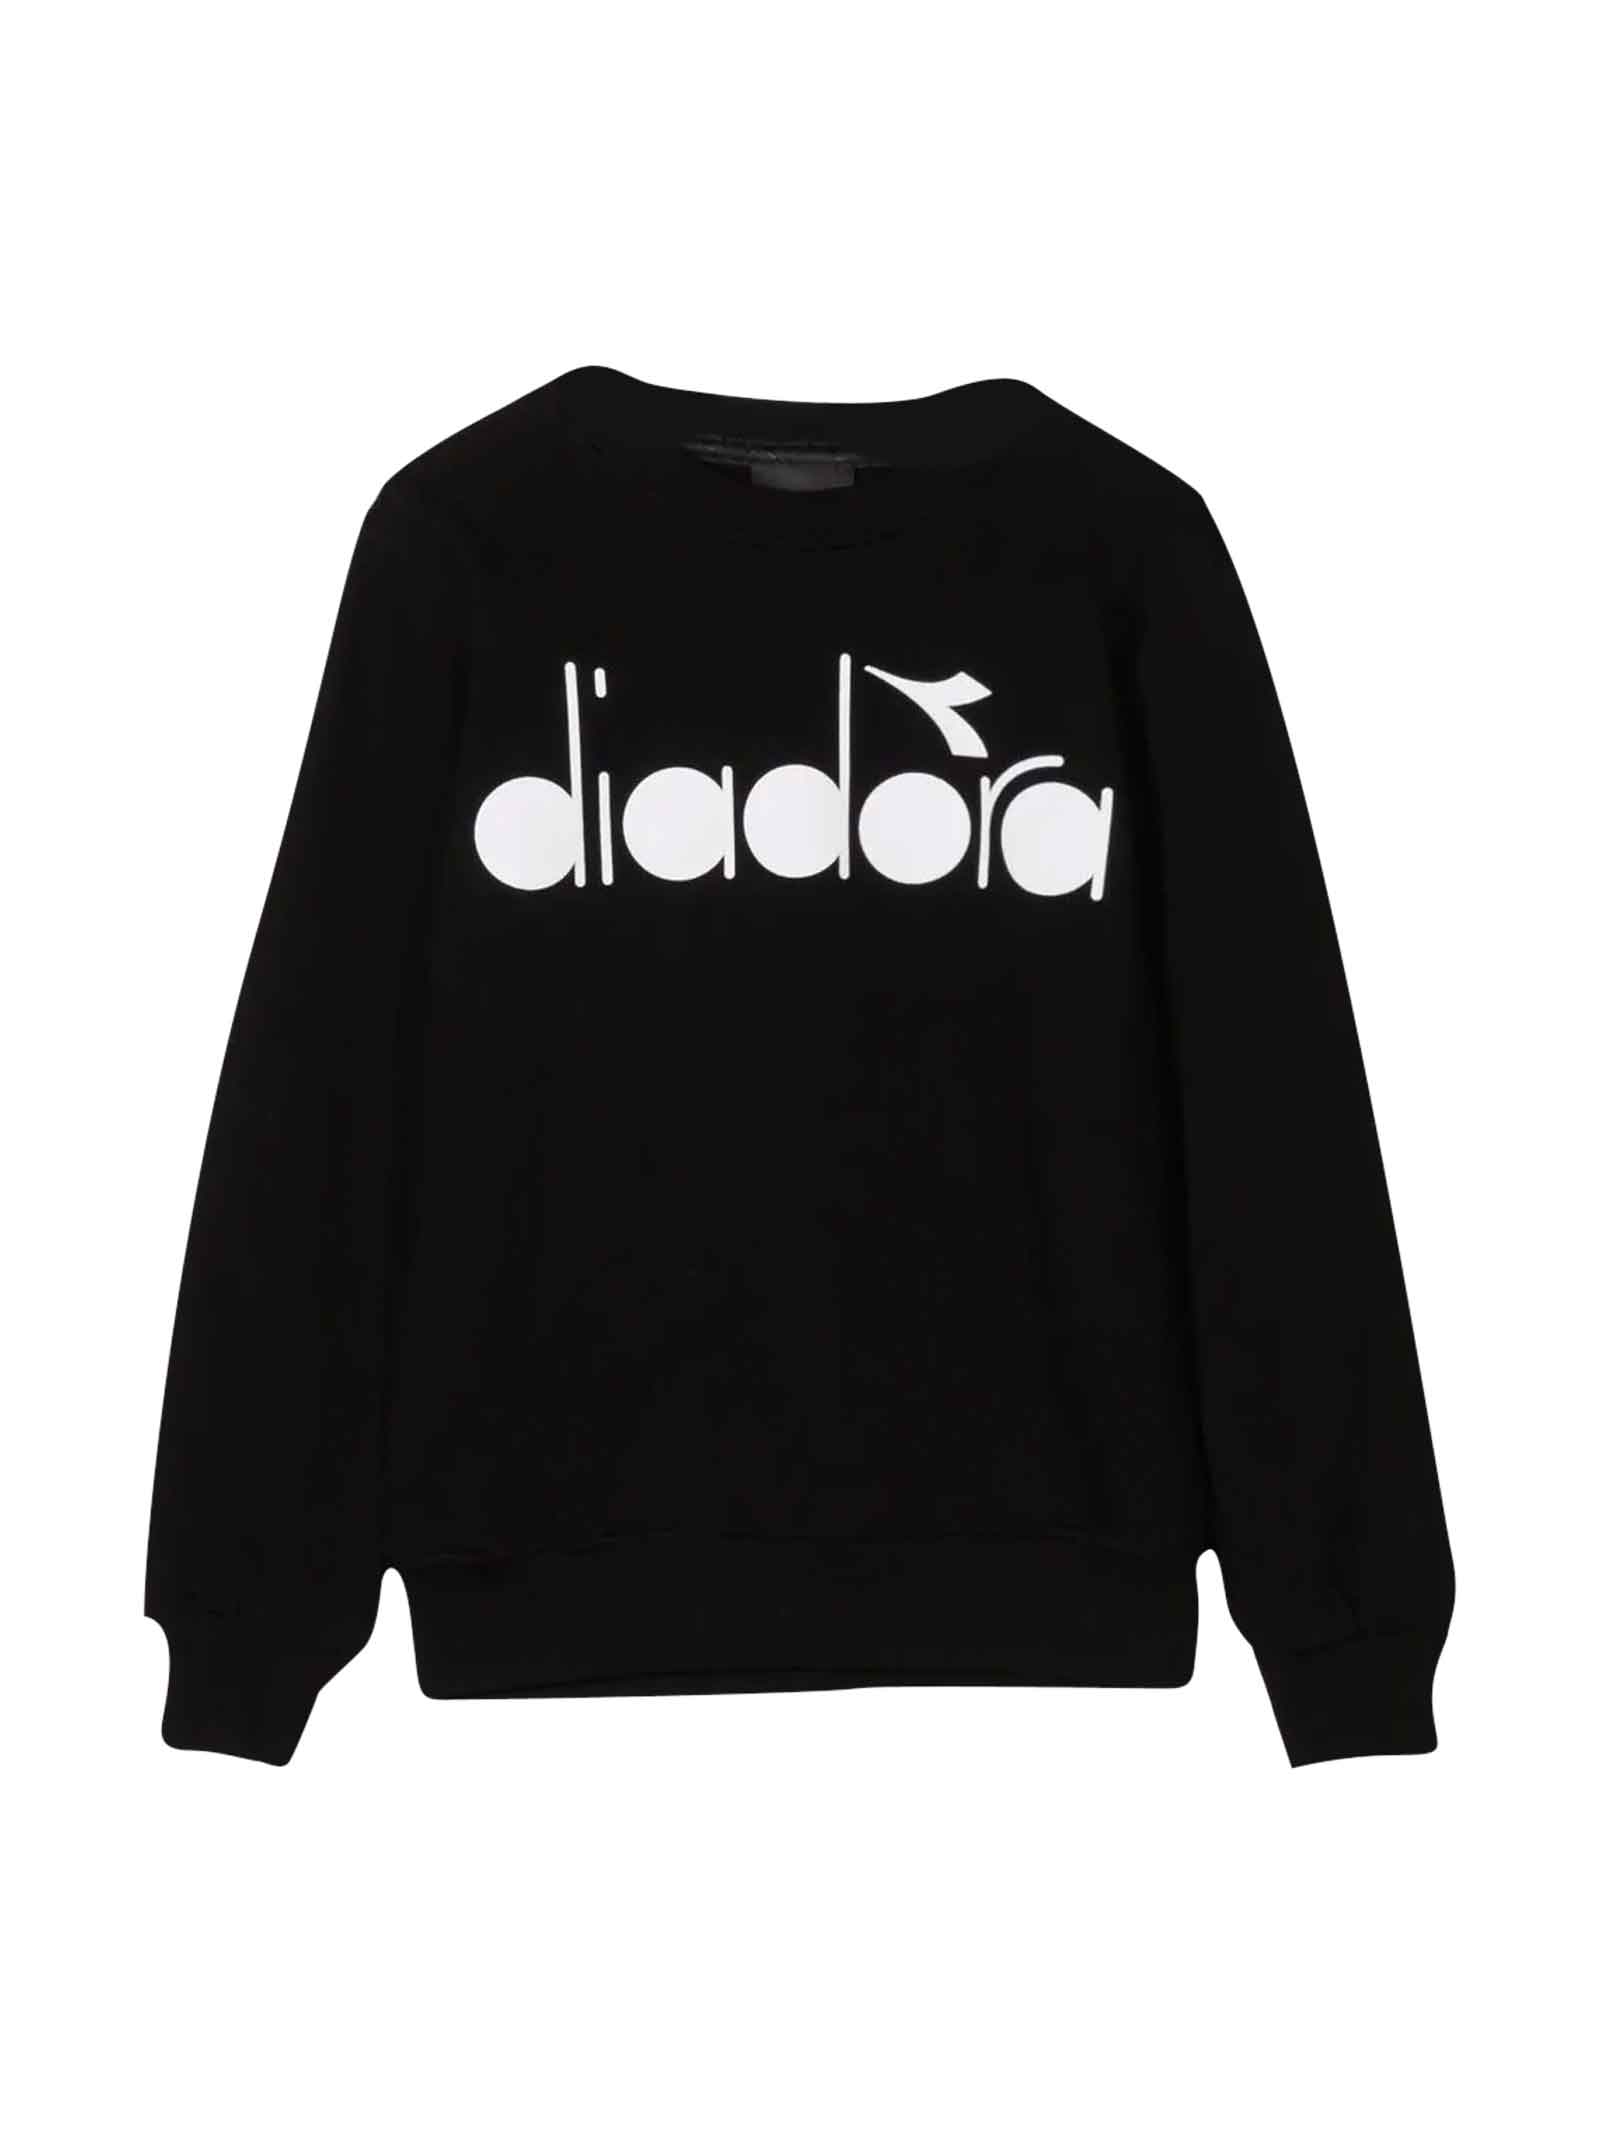 Diadora Black Sweatshirt Boy